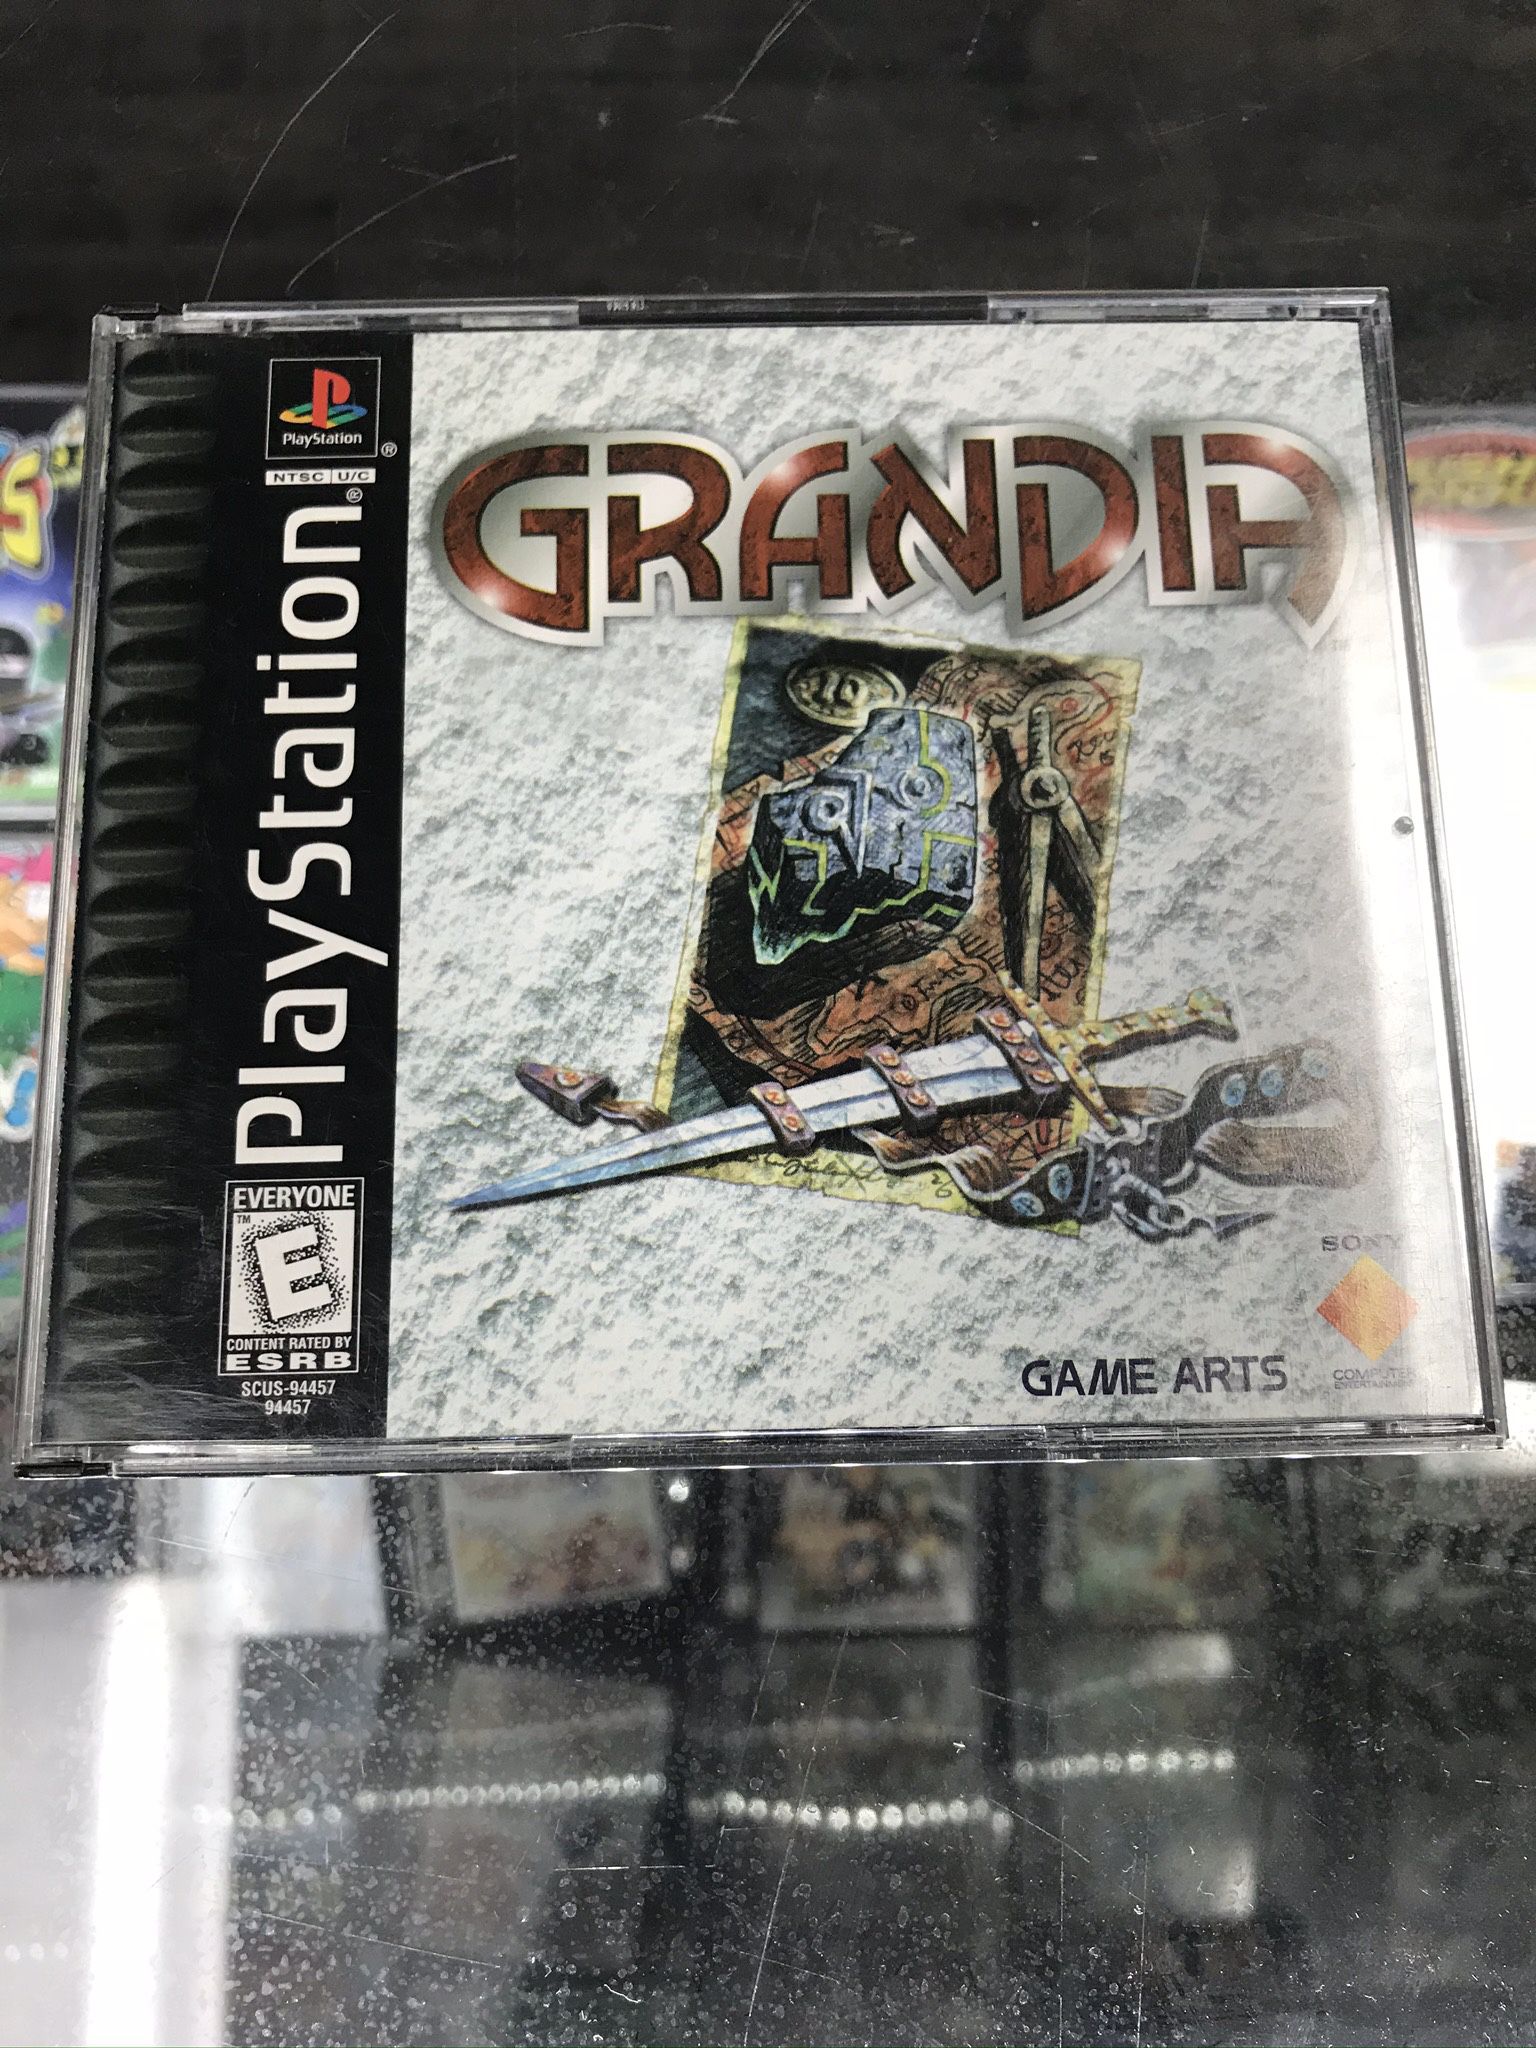 Grandia Ps1 $120 Gamehogs 11am-7pm